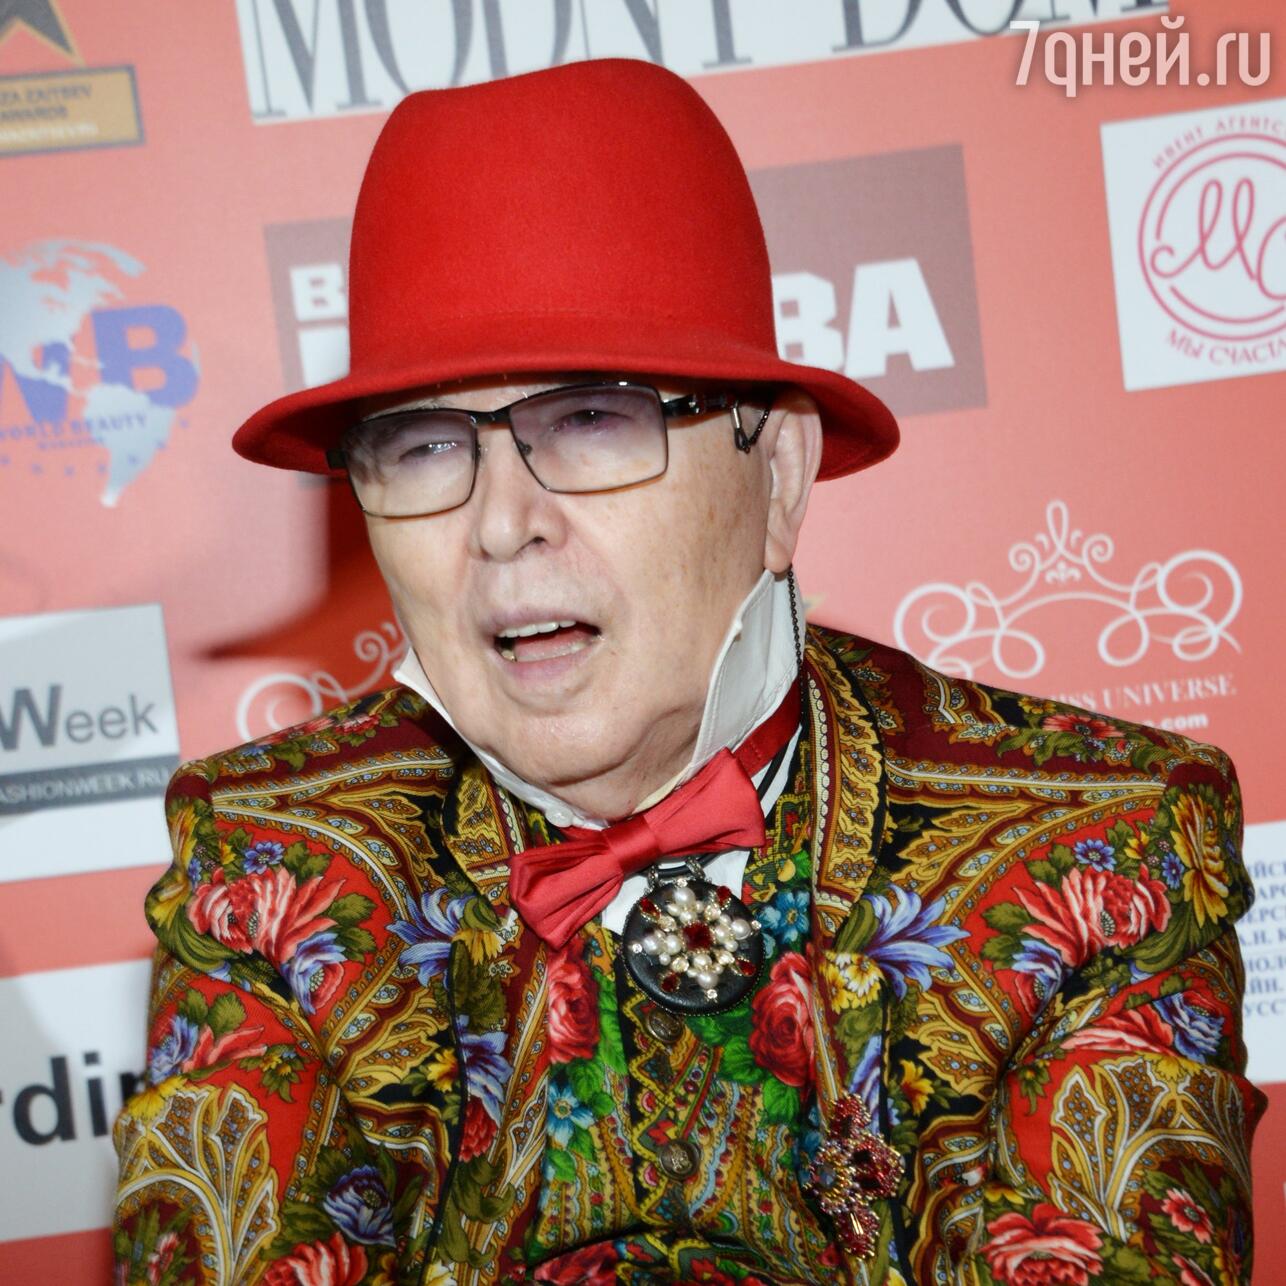 Едва говорит: Вячеслав Зайцев появился на публике в день празднования  своего 85-летия - 7Дней.ру